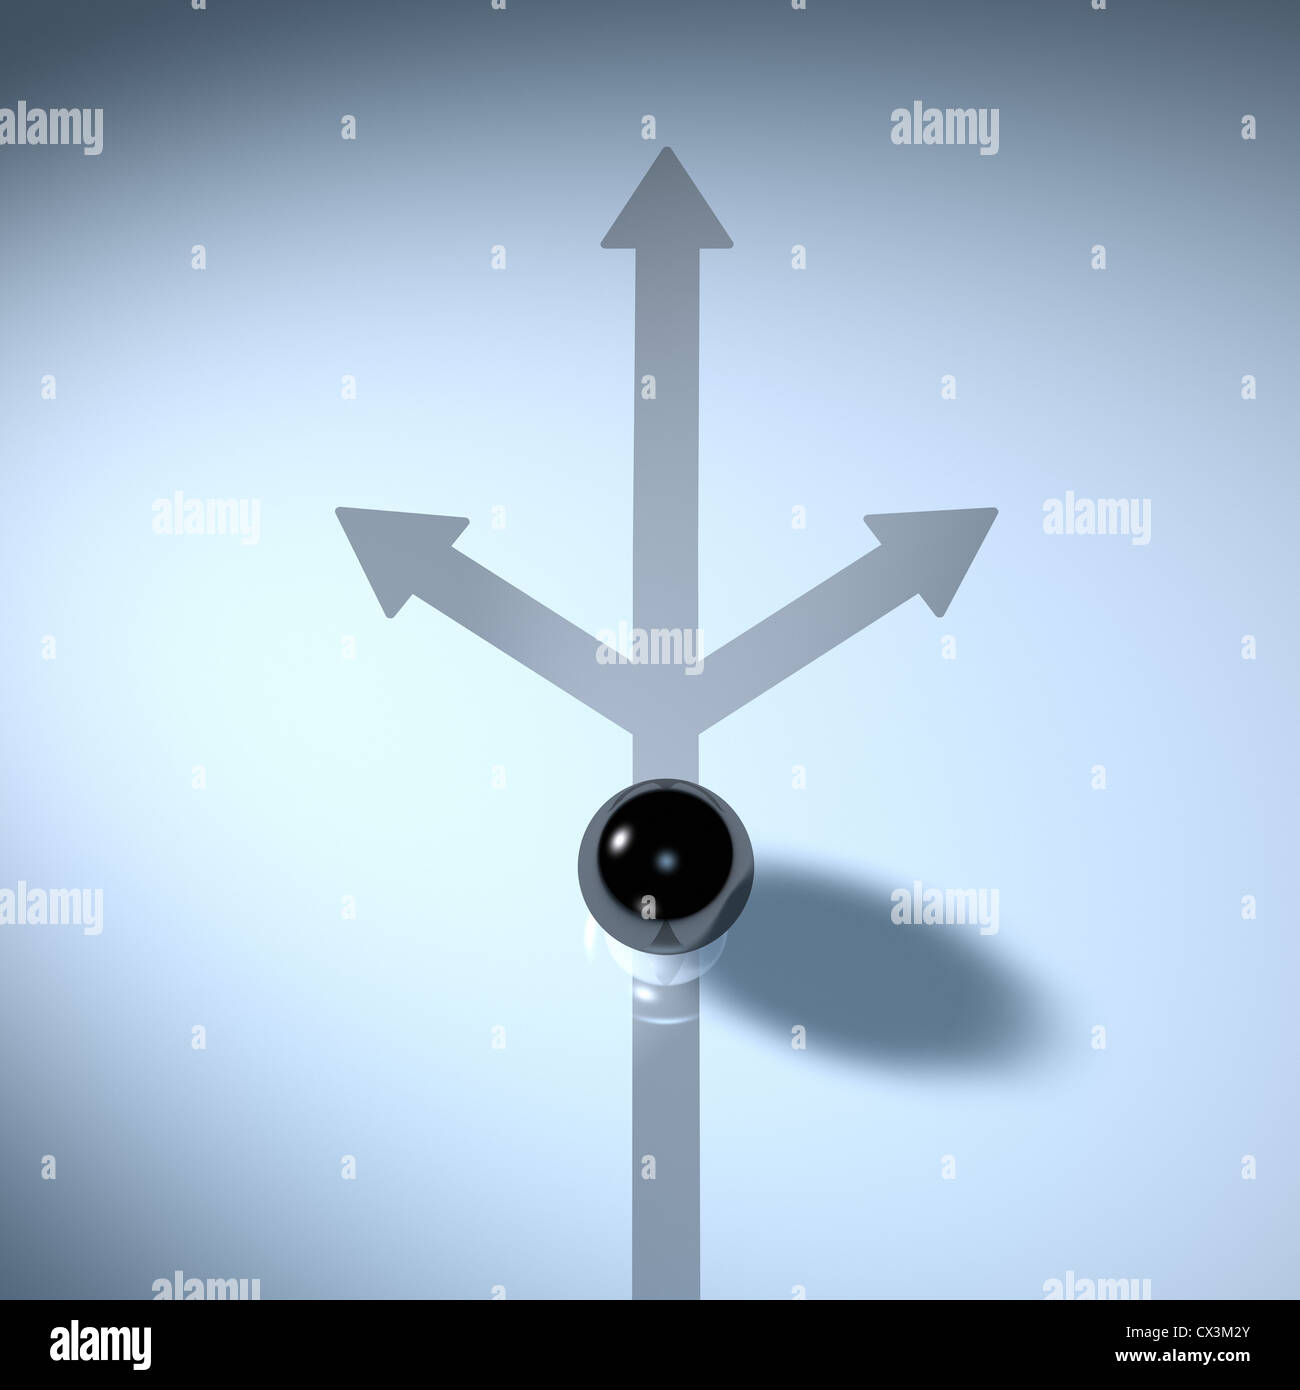 Schwarze Kugel Auf Einem Weg der Sich in 3 Richtungen Teilt - Ball ins Rollen auf einer Strecke, die in 3 Richtungen aufteilt Stockfoto